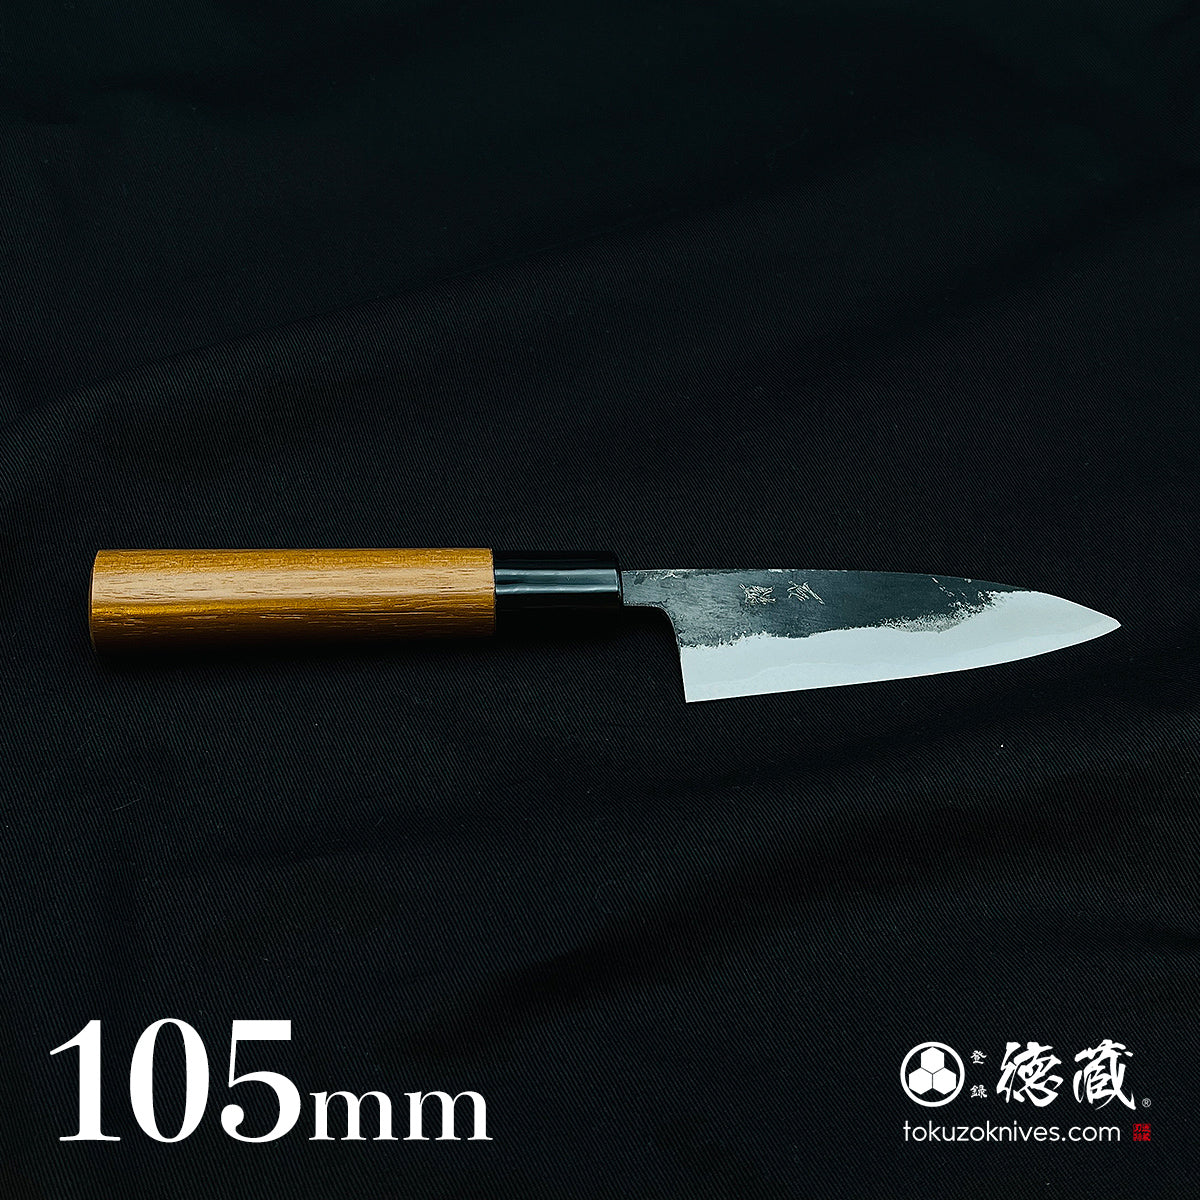 徳蔵刃物 TOKUZO KNIVES: 土佐打刃物の包丁屋 tokuzoknives.com